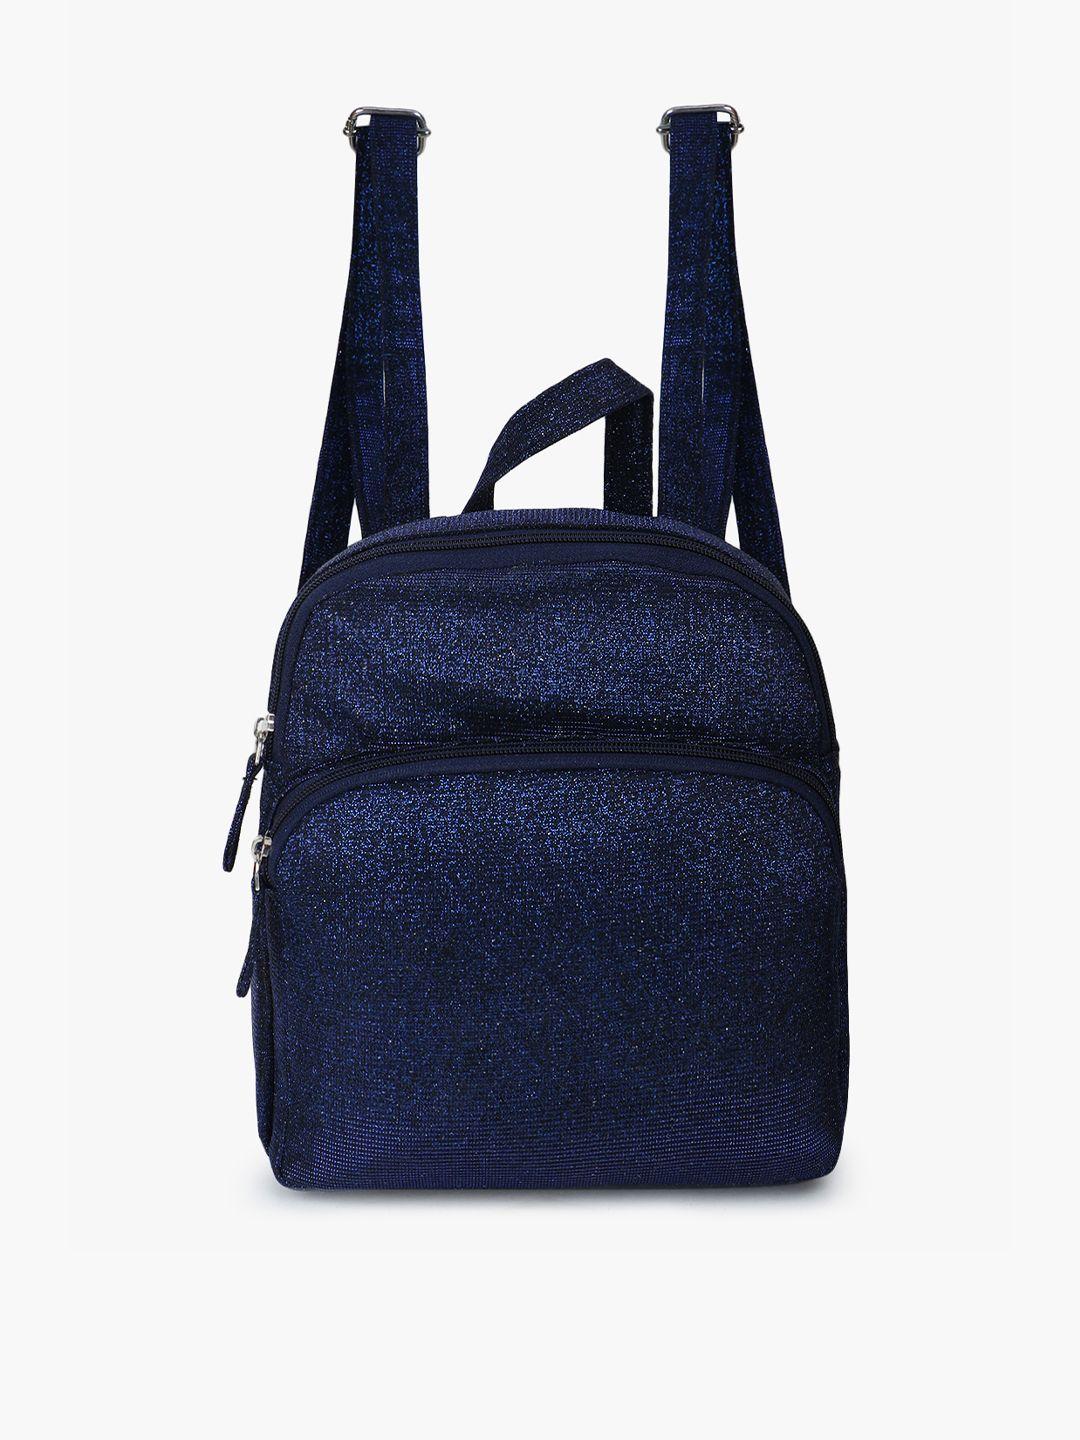 spice art women embellished backpack